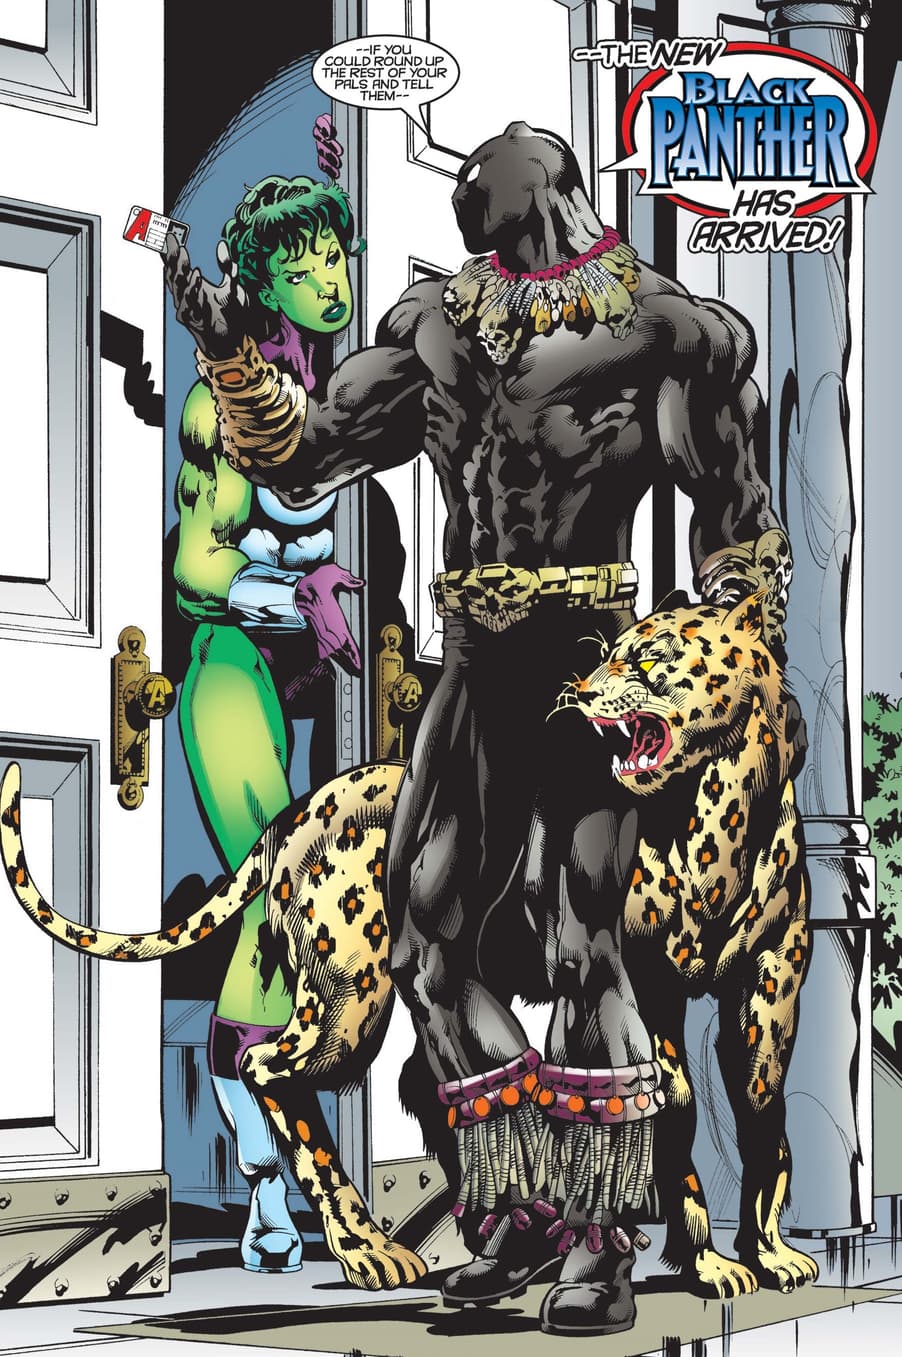 Killmonger as Black Panther in BLACK PANTHER (1998) #22.